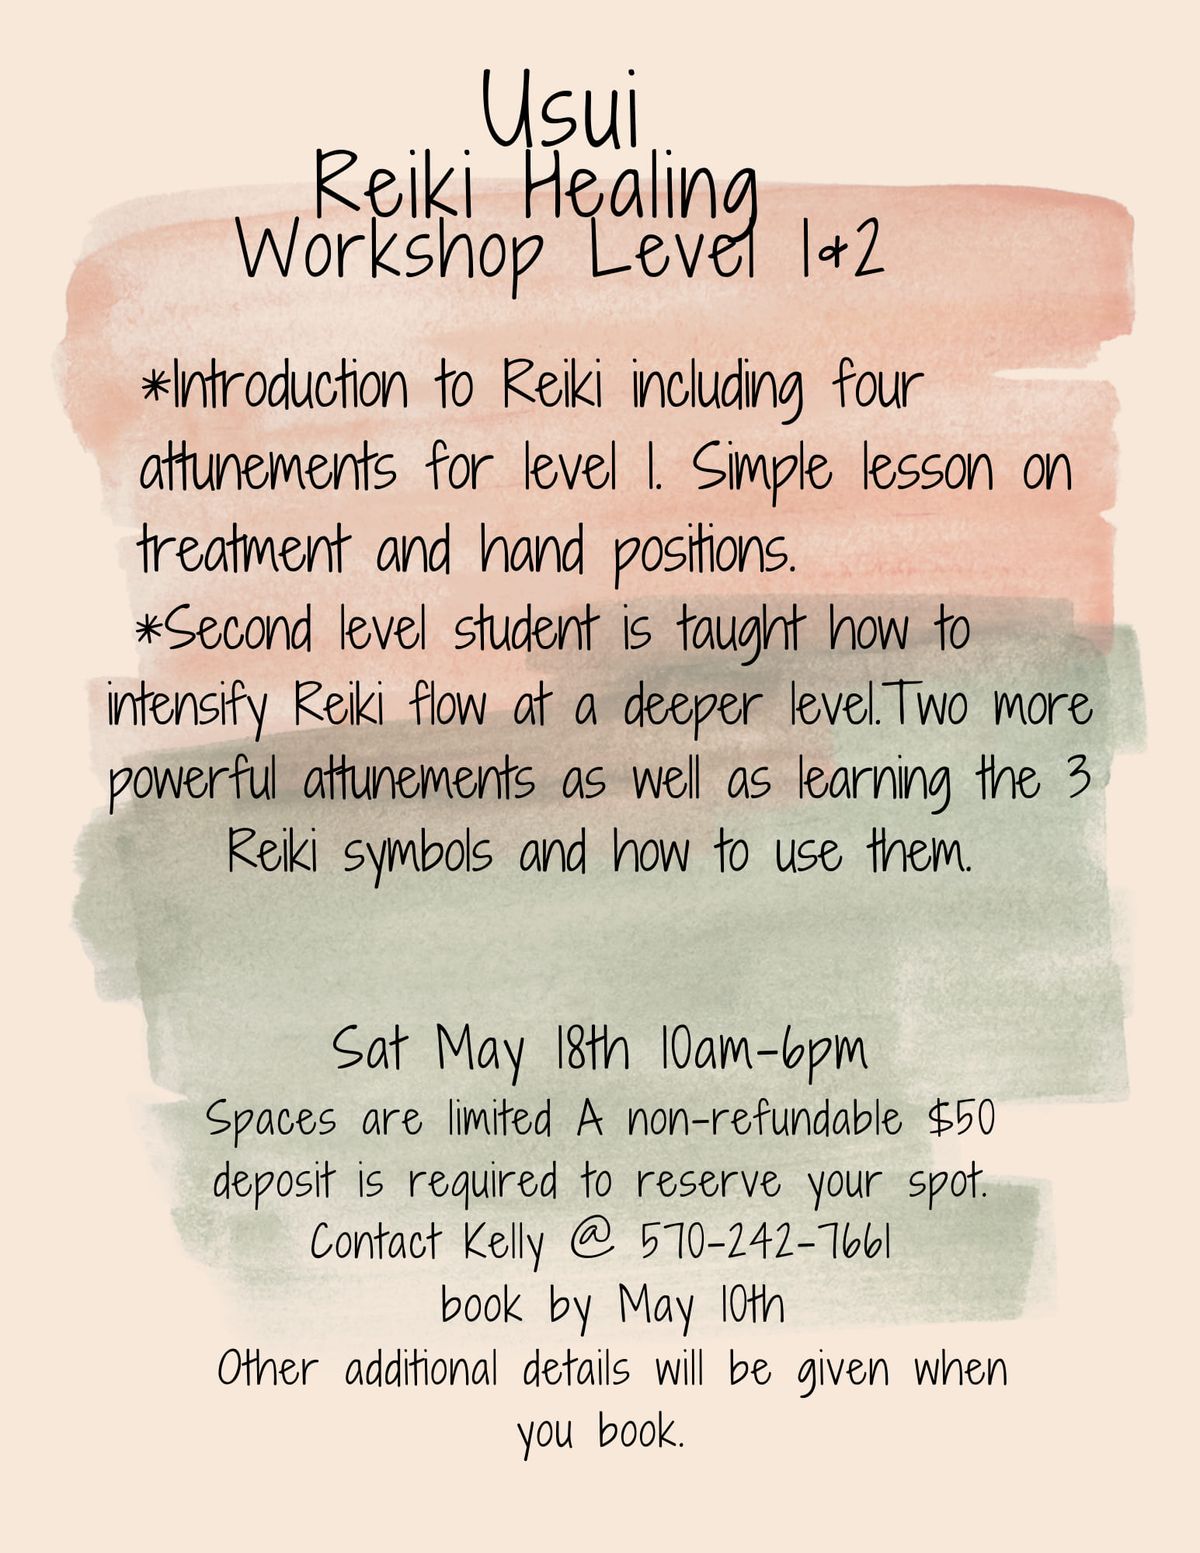 Usui Reiki Level 1 & 2 Workshop